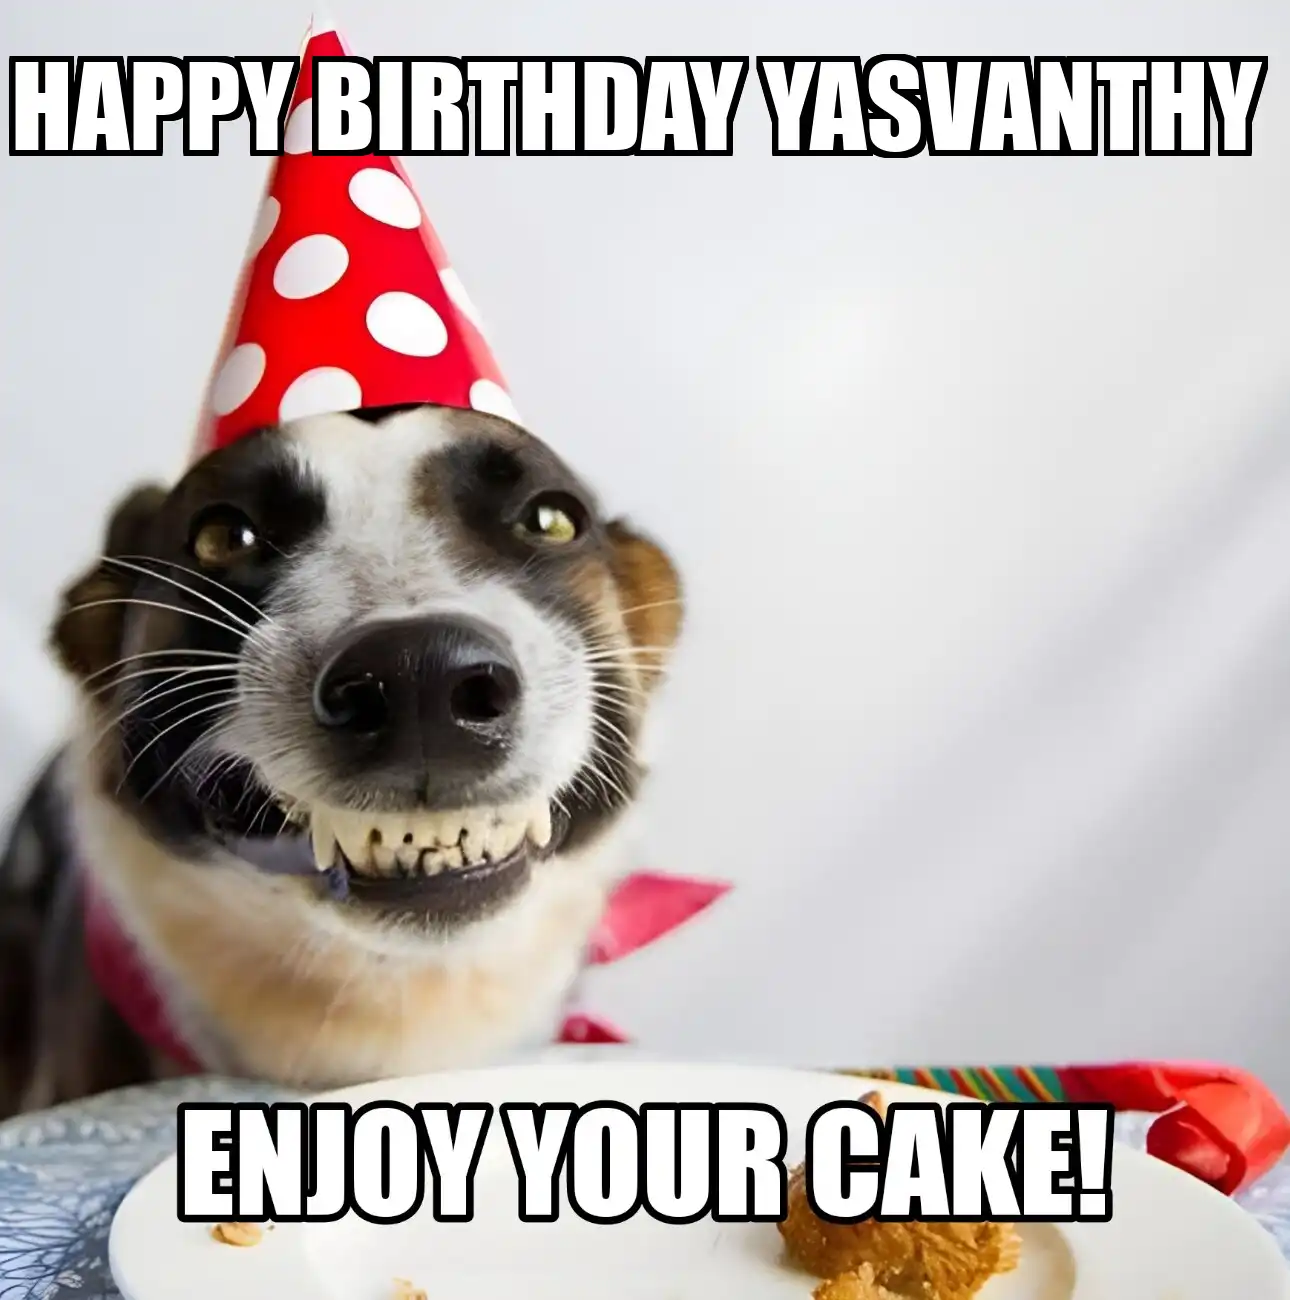 Happy Birthday Yasvanthy Enjoy Your Cake Dog Meme